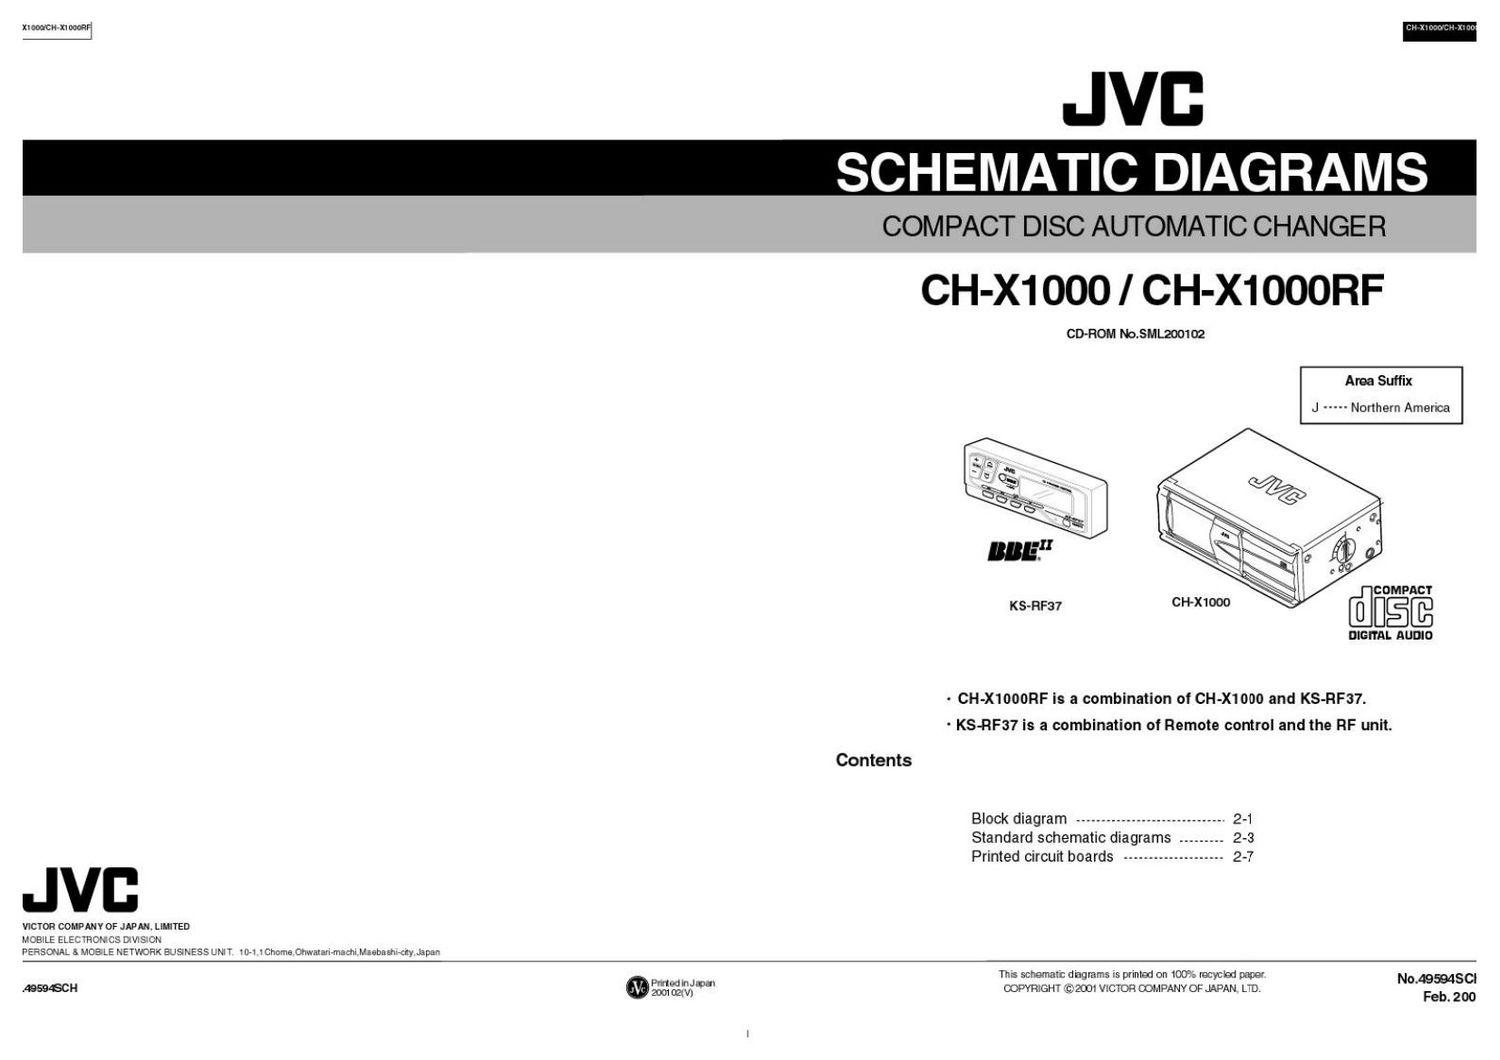 Jvc CHX 1000 Schematic